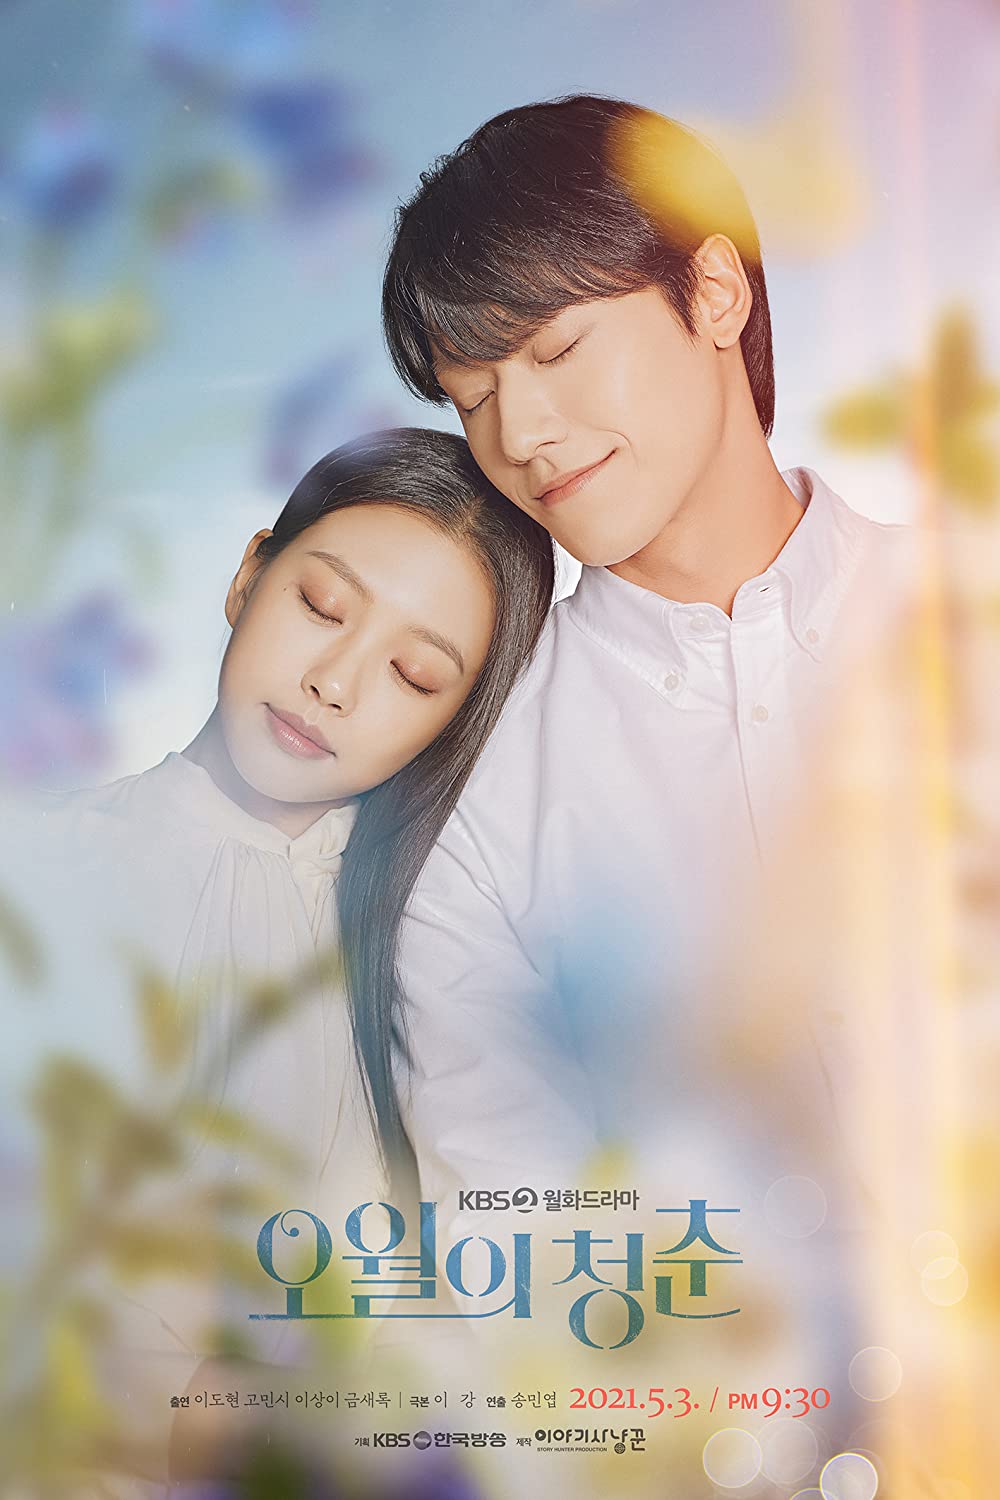 13 Drama Korea romantis sad ending, Twenty-Five Twenty-One bikin haru